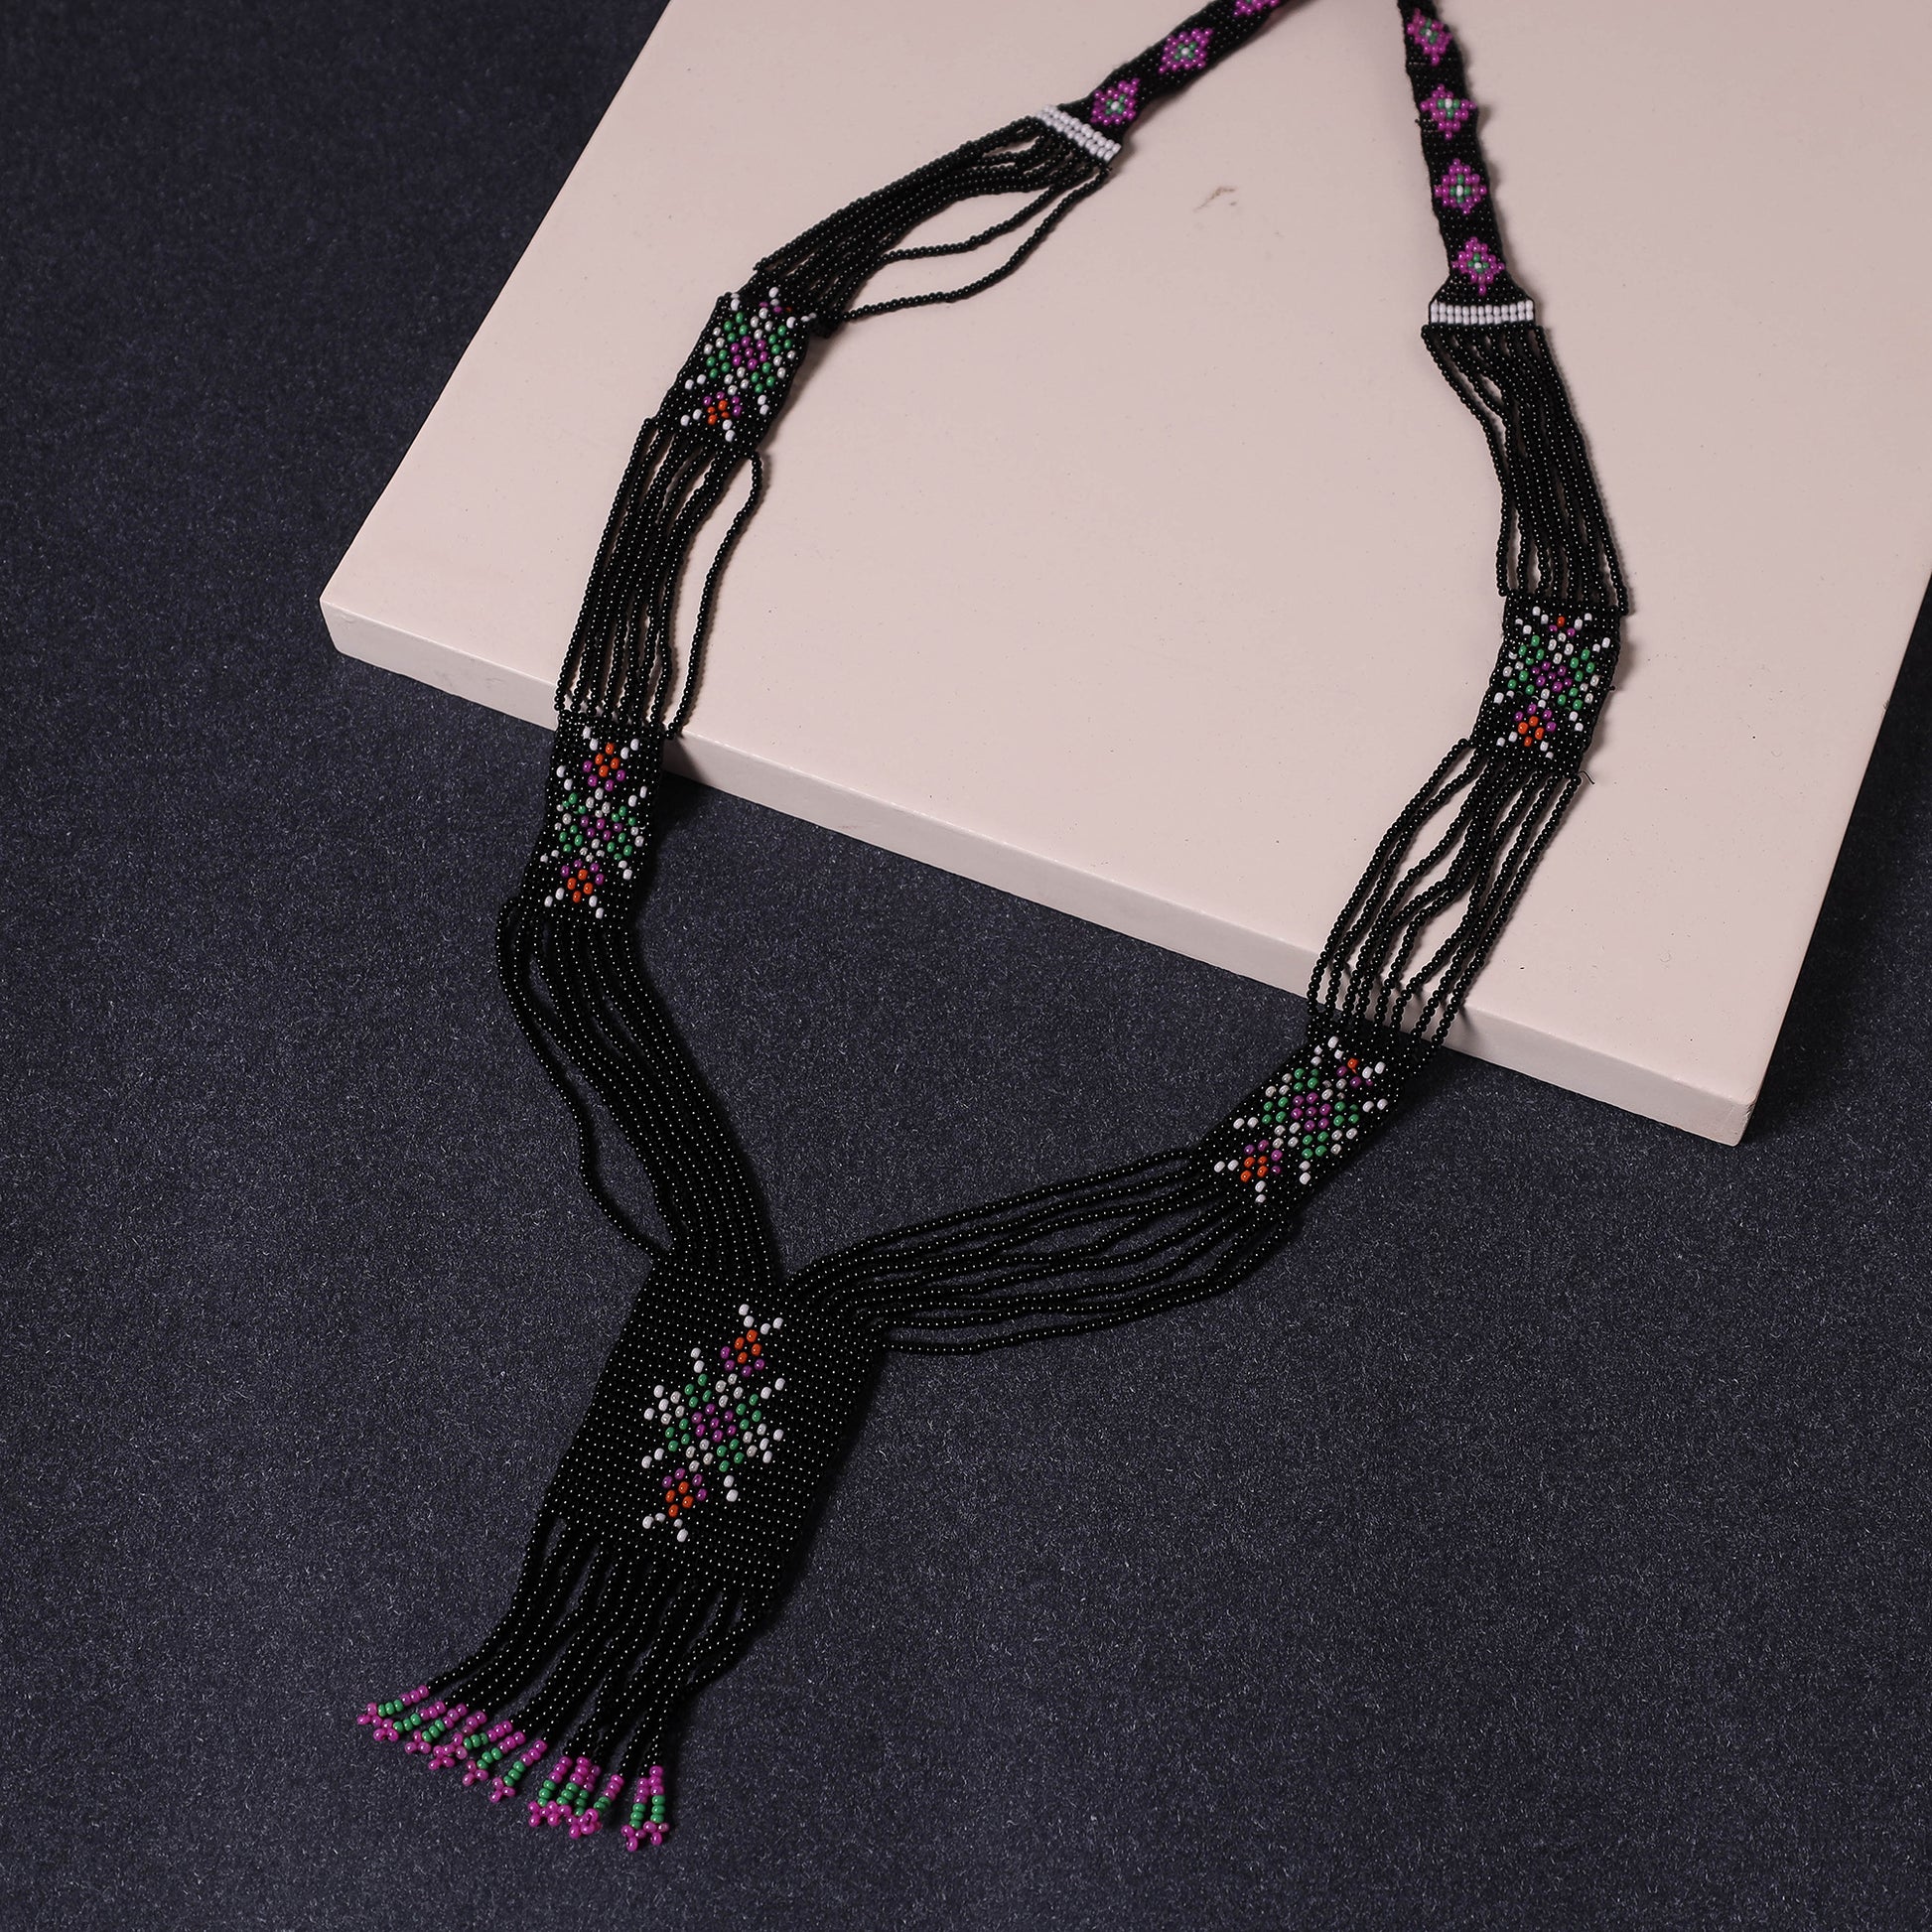 beadwork necklace